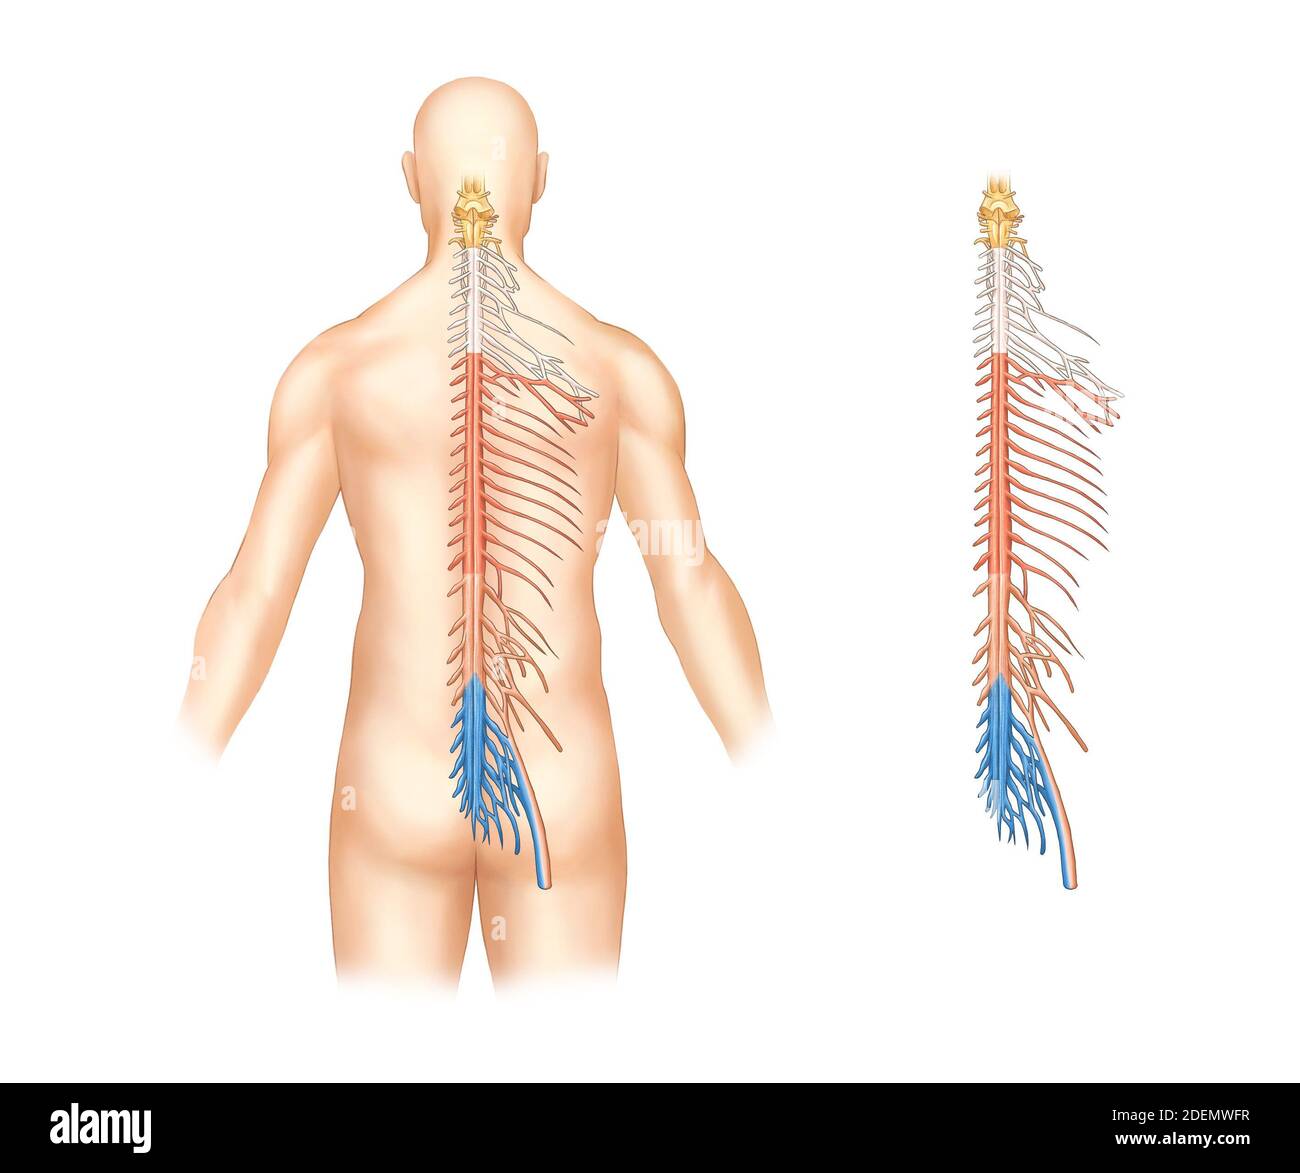 anatomía del sistema nervioso espinal Foto de stock